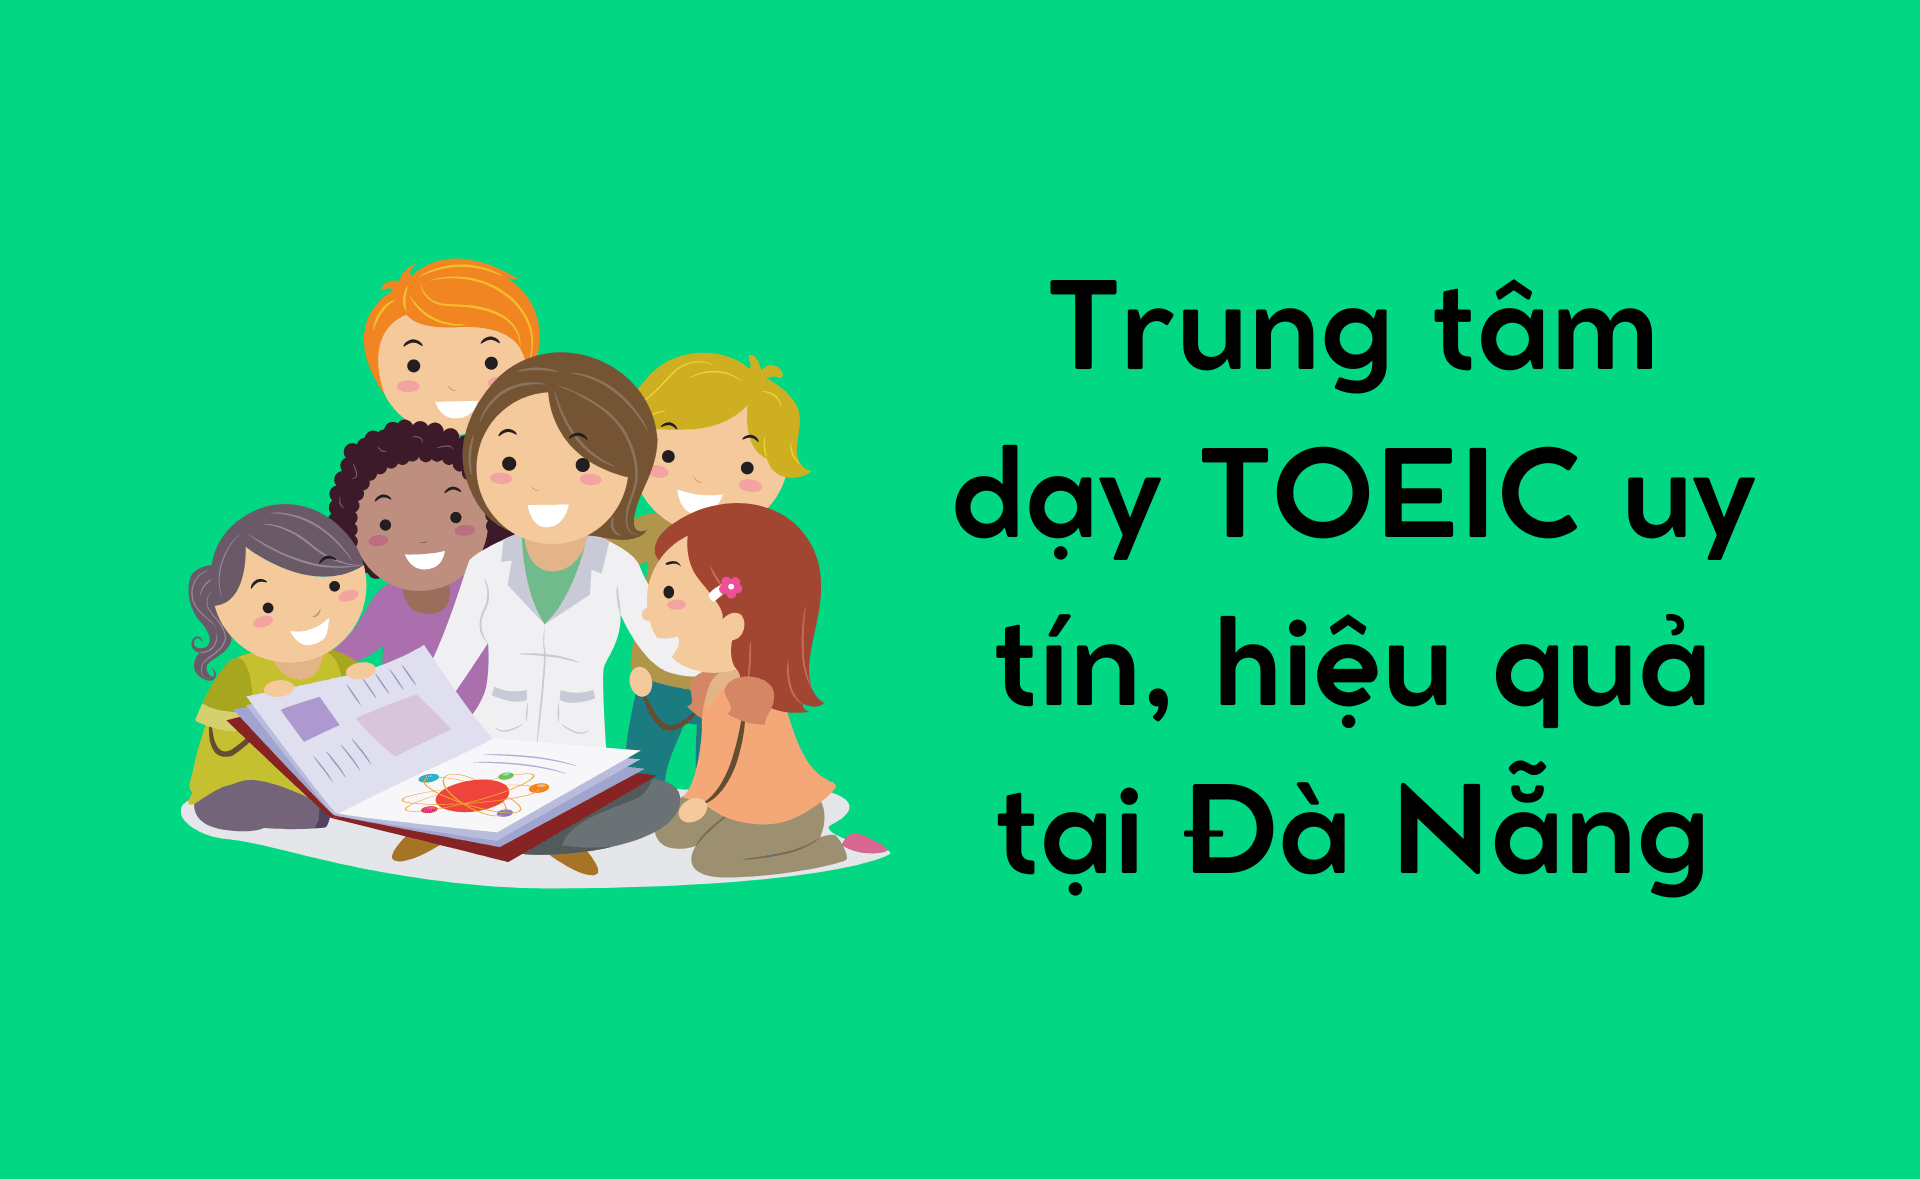 Trung tâm dạy TOEIC tại Đà Nẵng uy tín, hiệu quả